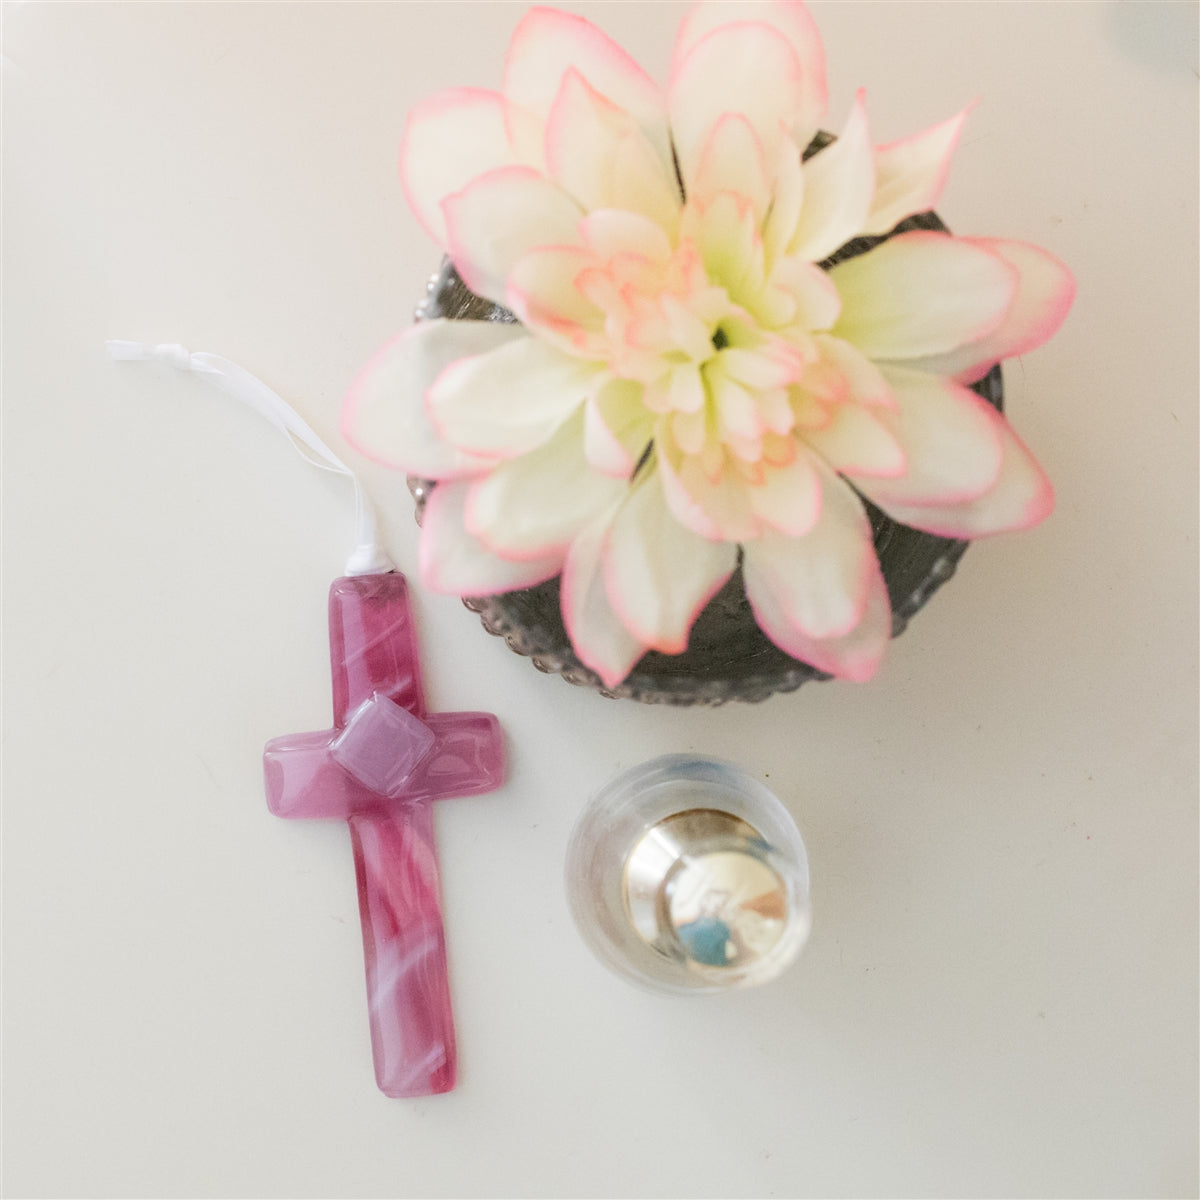 Confirmation Cross for Girl: Handmade Glass